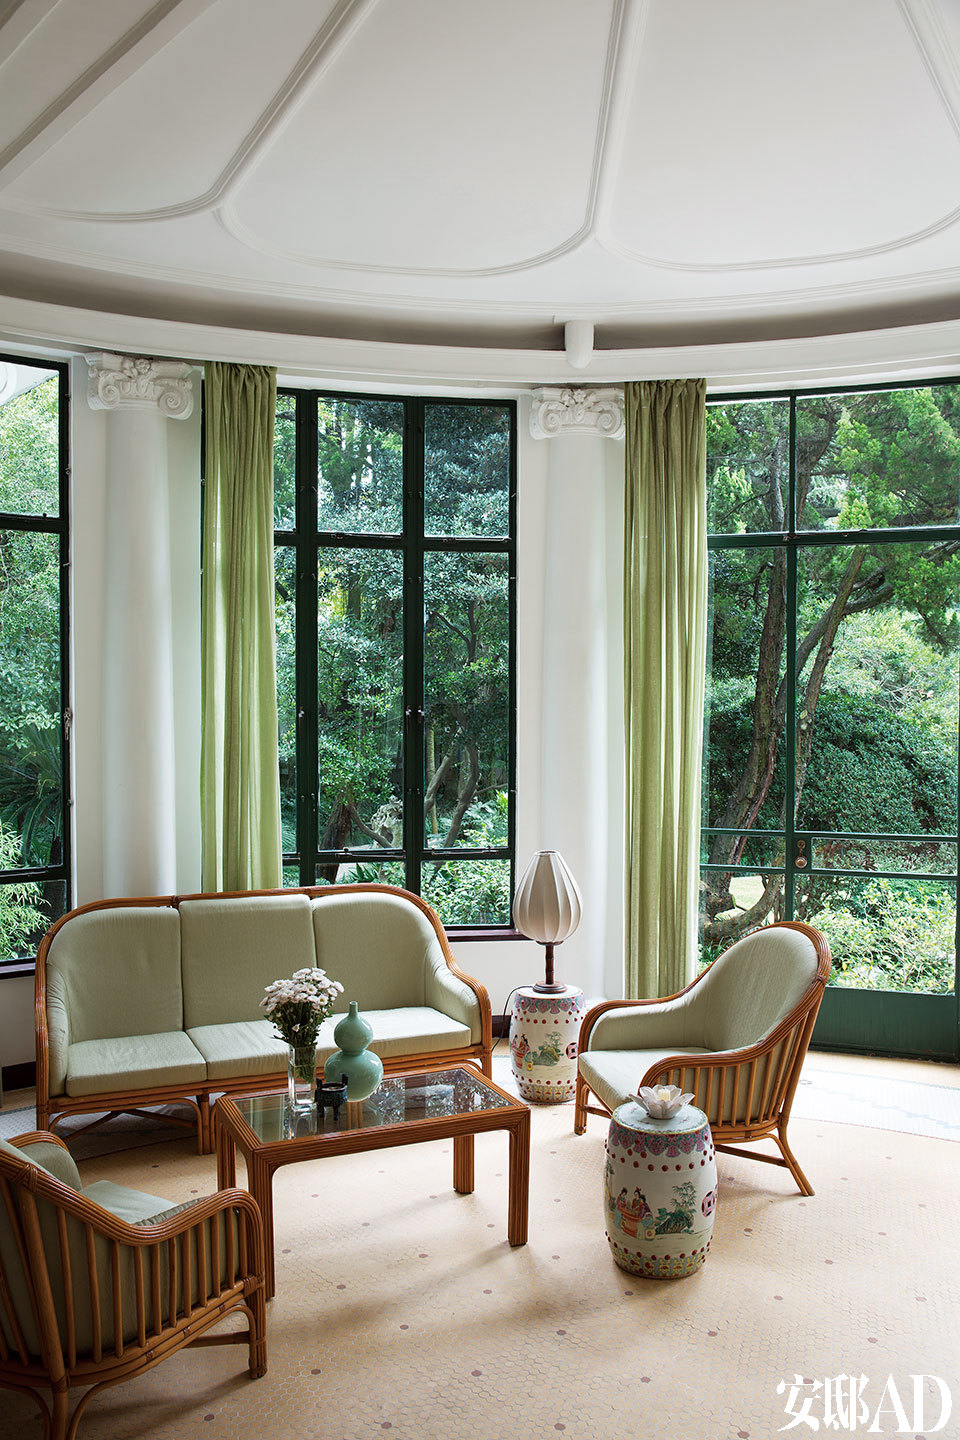 圆形的“冬日花园”面向室外，是早餐、下午茶和聊天的好去处。“ 冬日花园” 里，淡绿色的窗帘和柳条家具的搭配，让人感觉已经置身于室外。